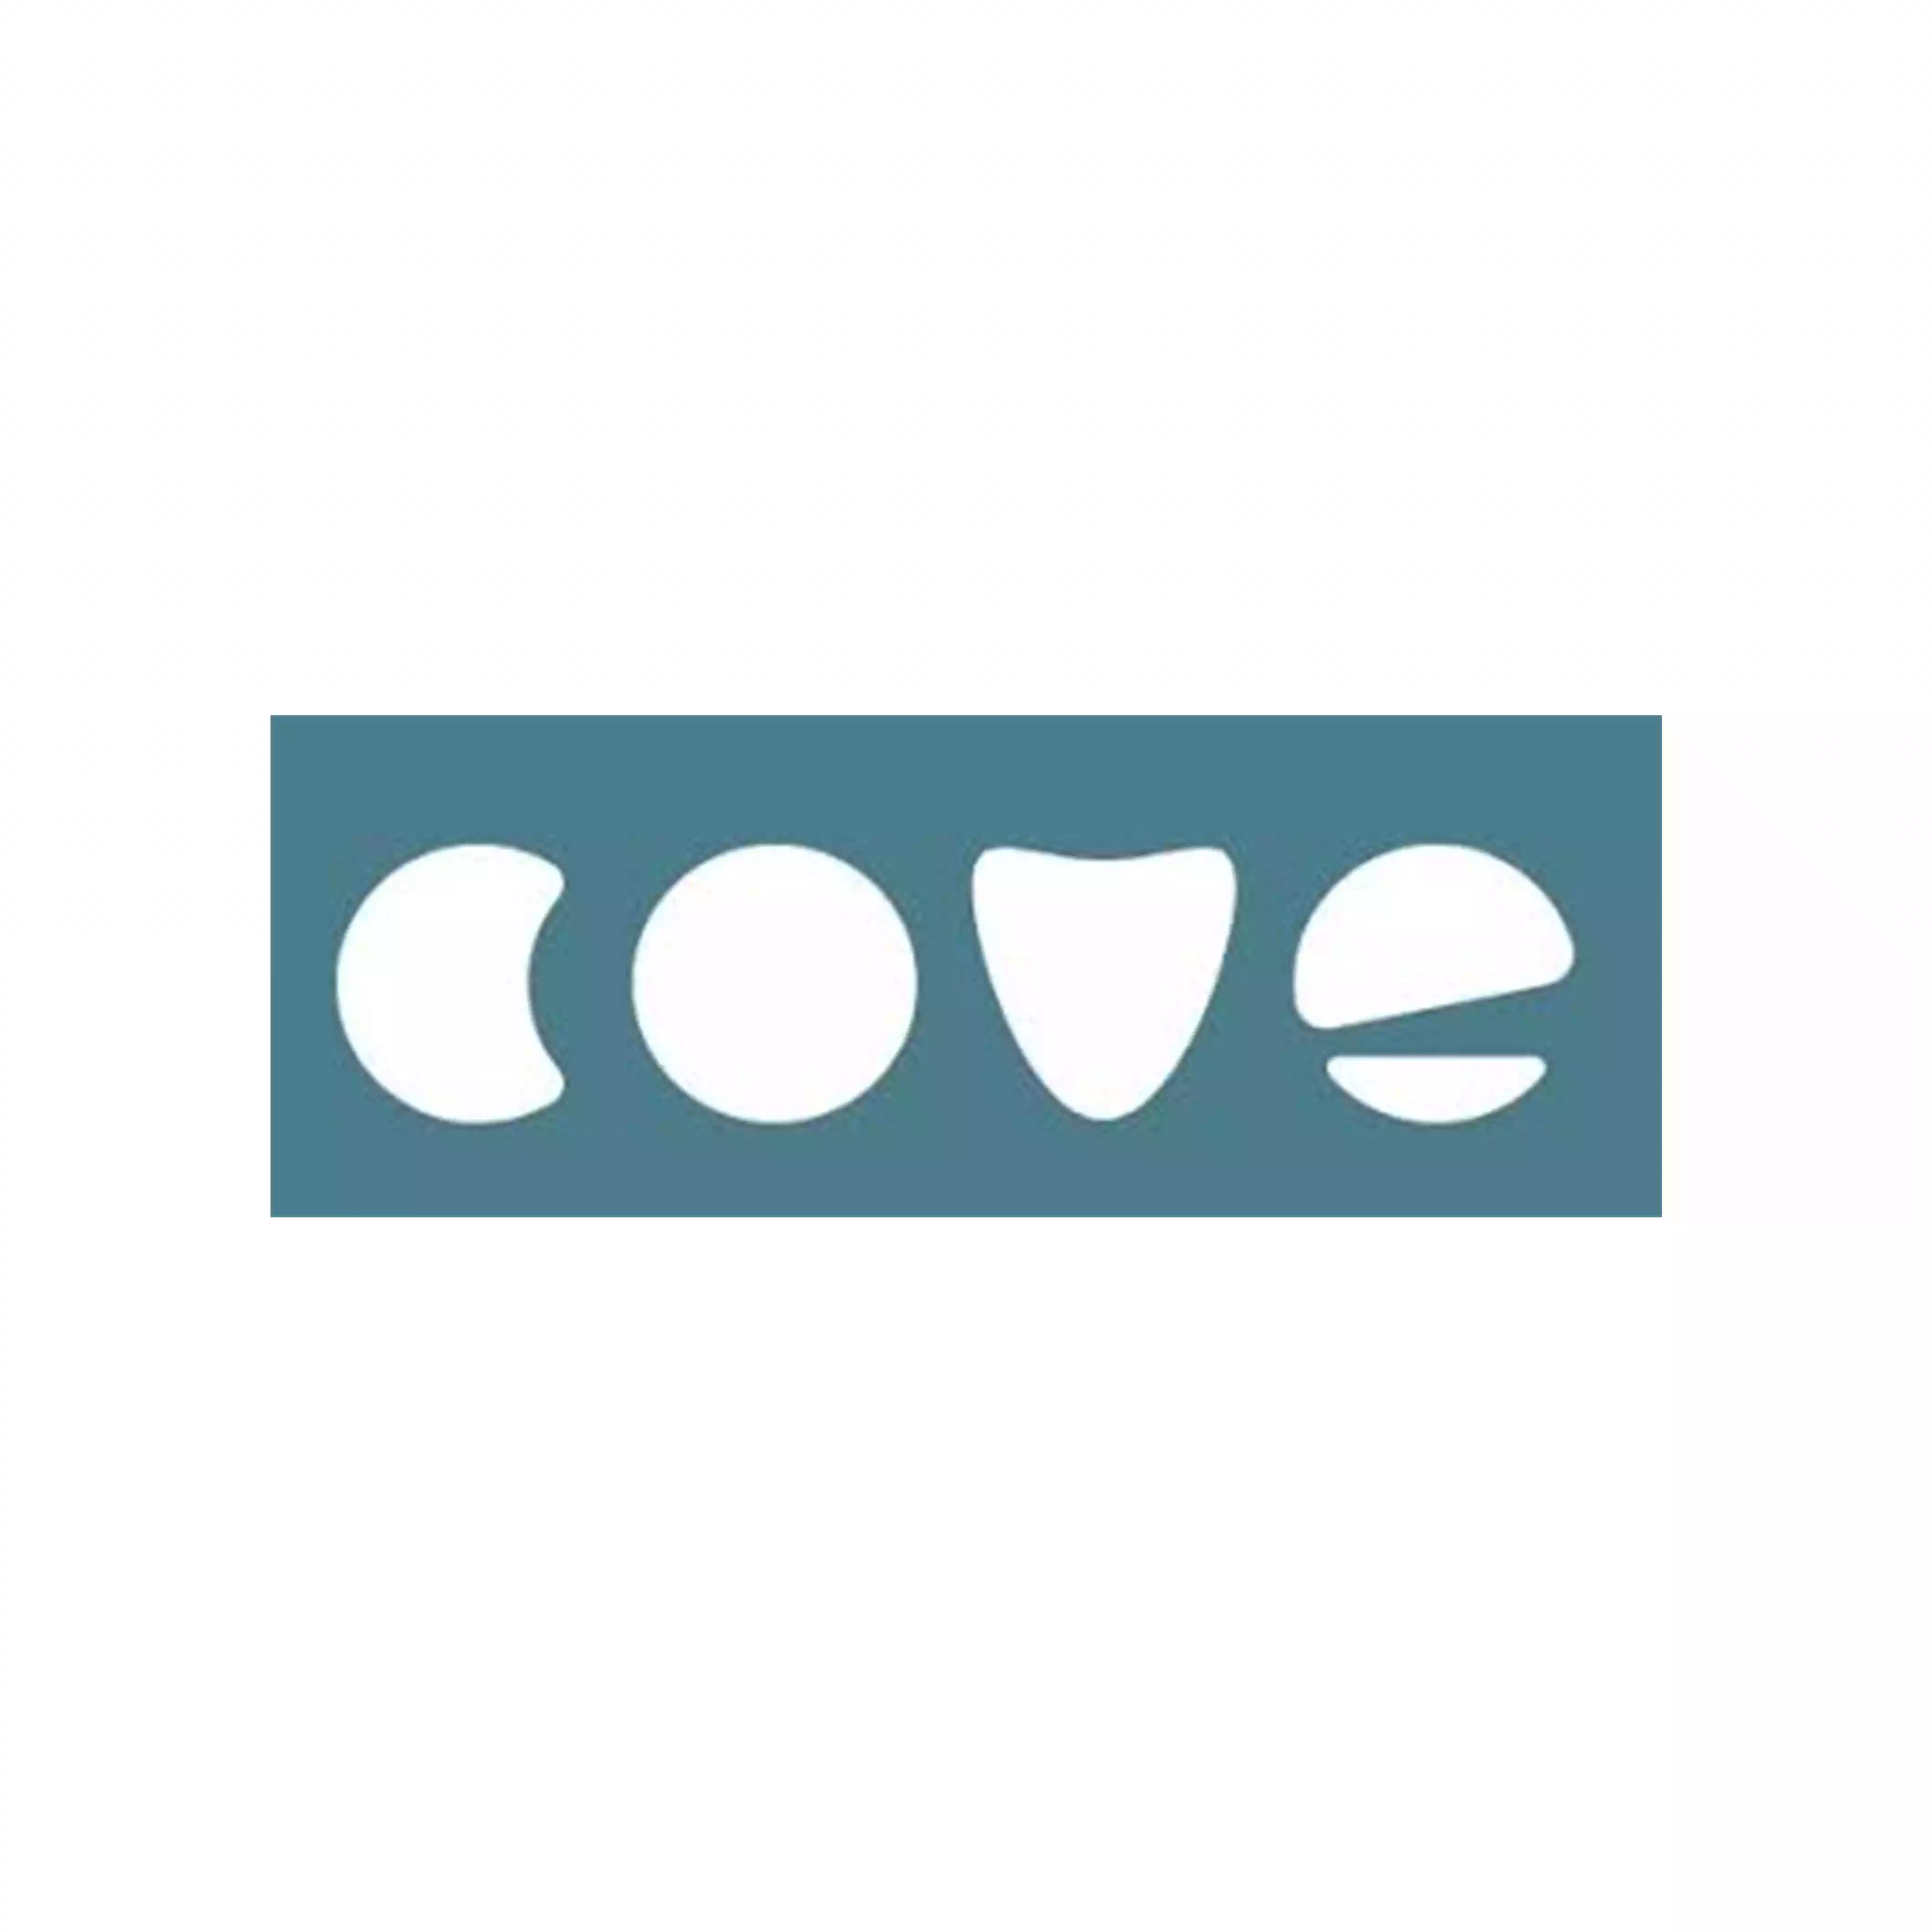 Feel cove logo